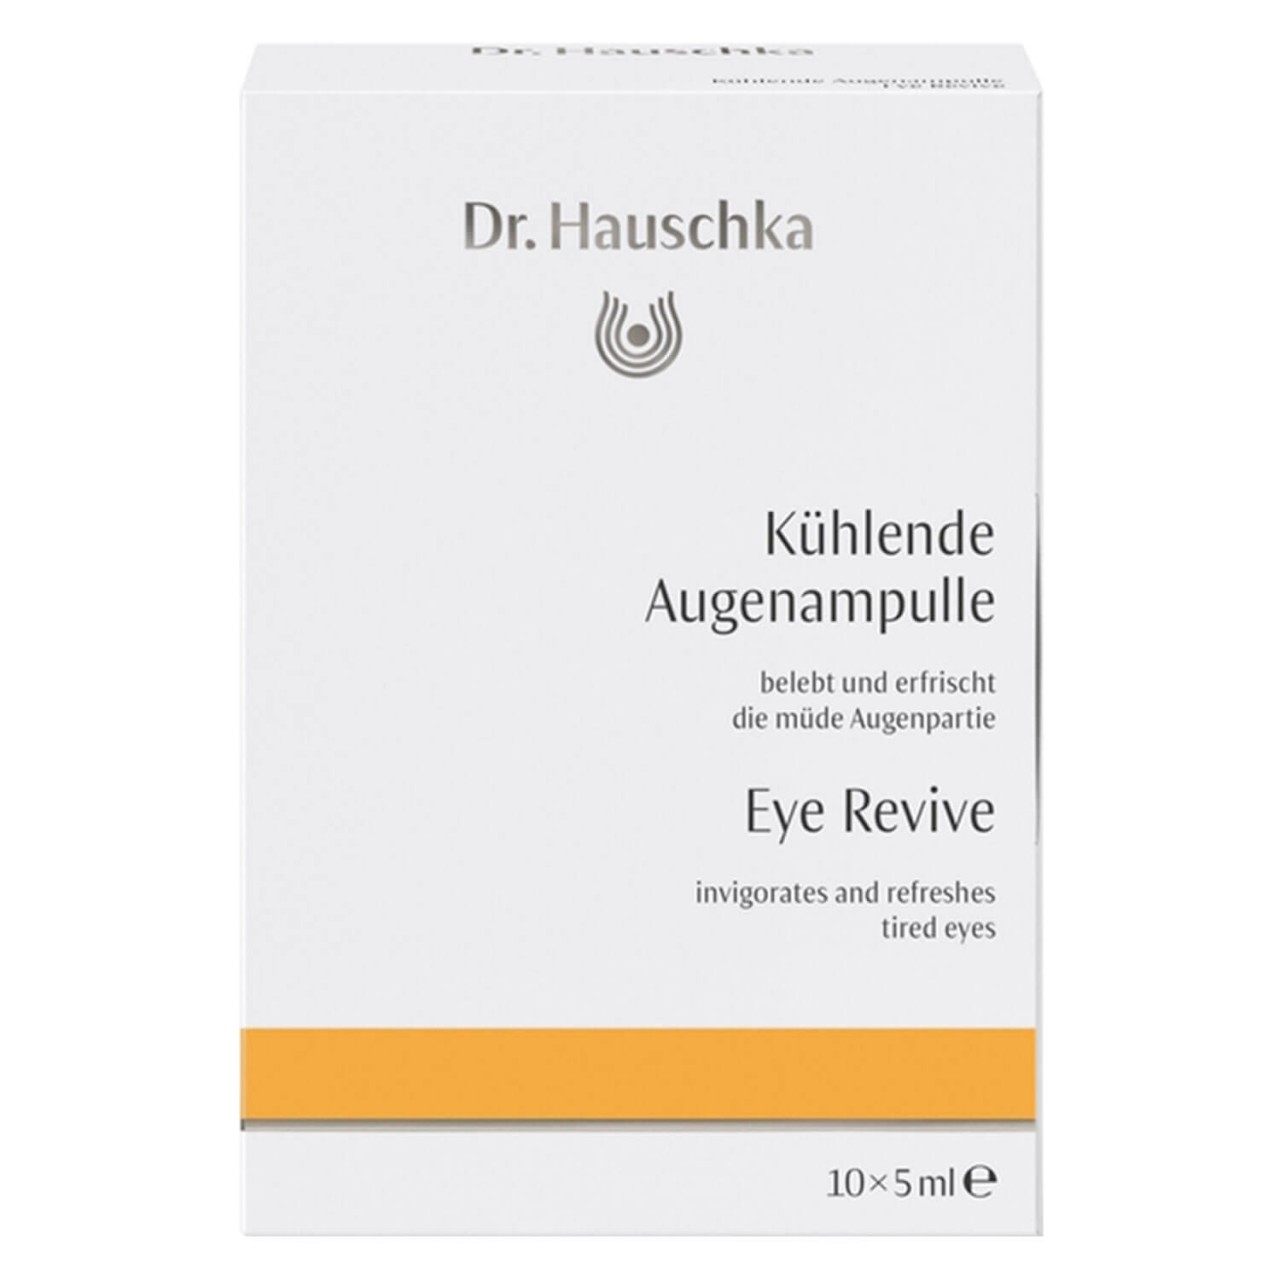 Dr. Hauschka - Kühlende Augenampulle von Dr. Hauschka